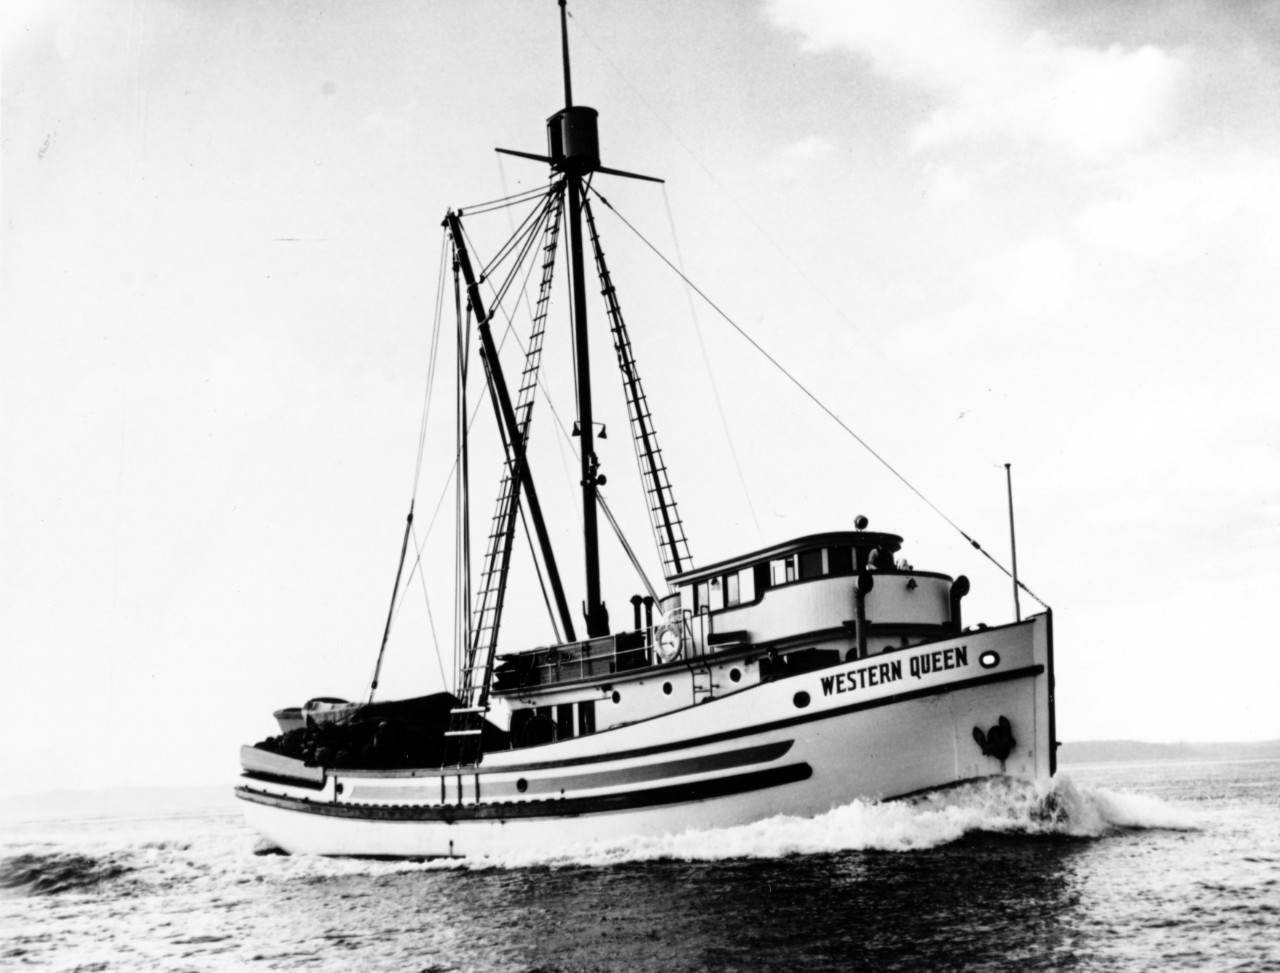 WESTERN QUEEN (U.S. Fishing Vessel, 1940)